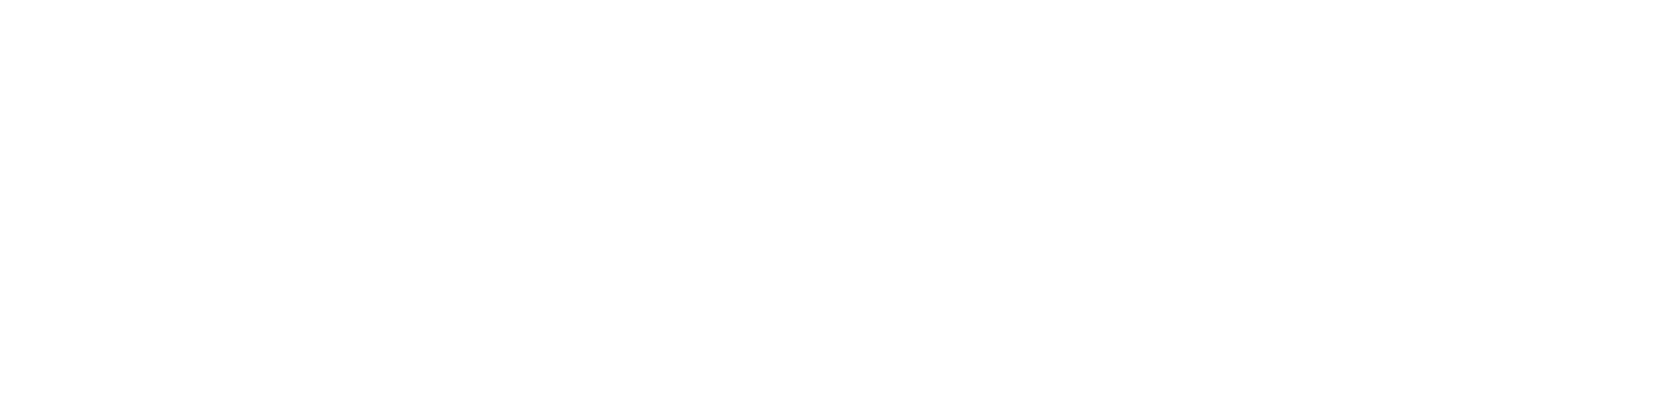 Yle Radio Suomi, Turku